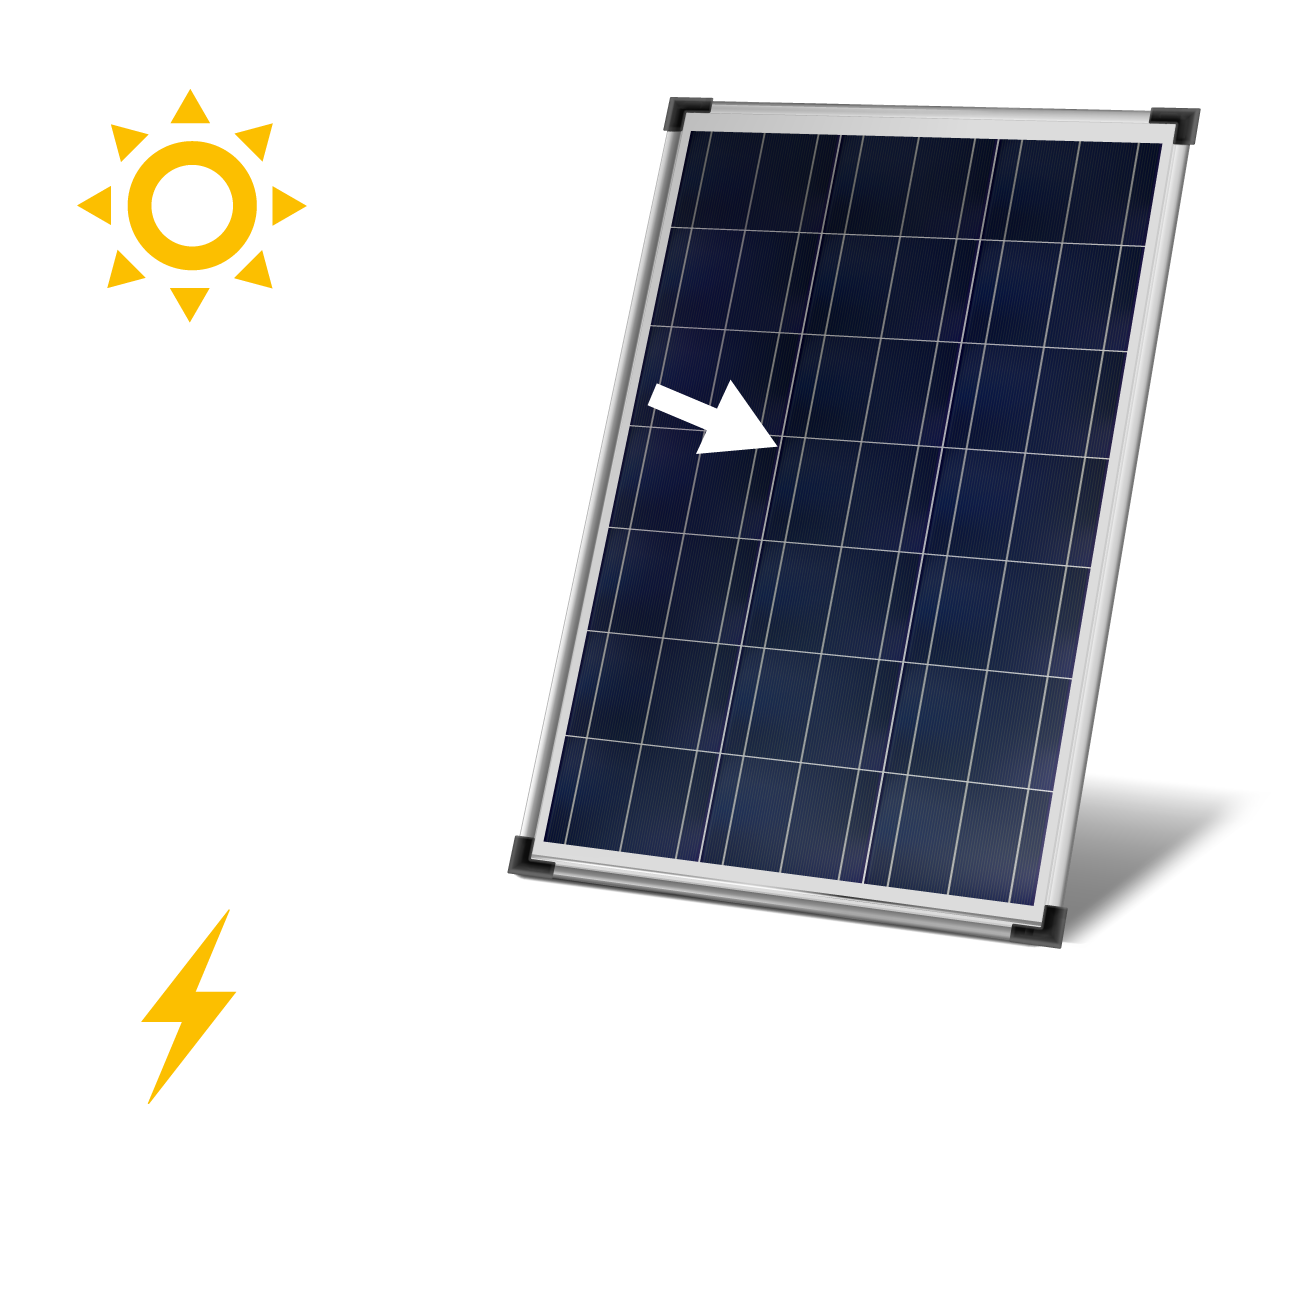 Panneau solaire photovoltaïque